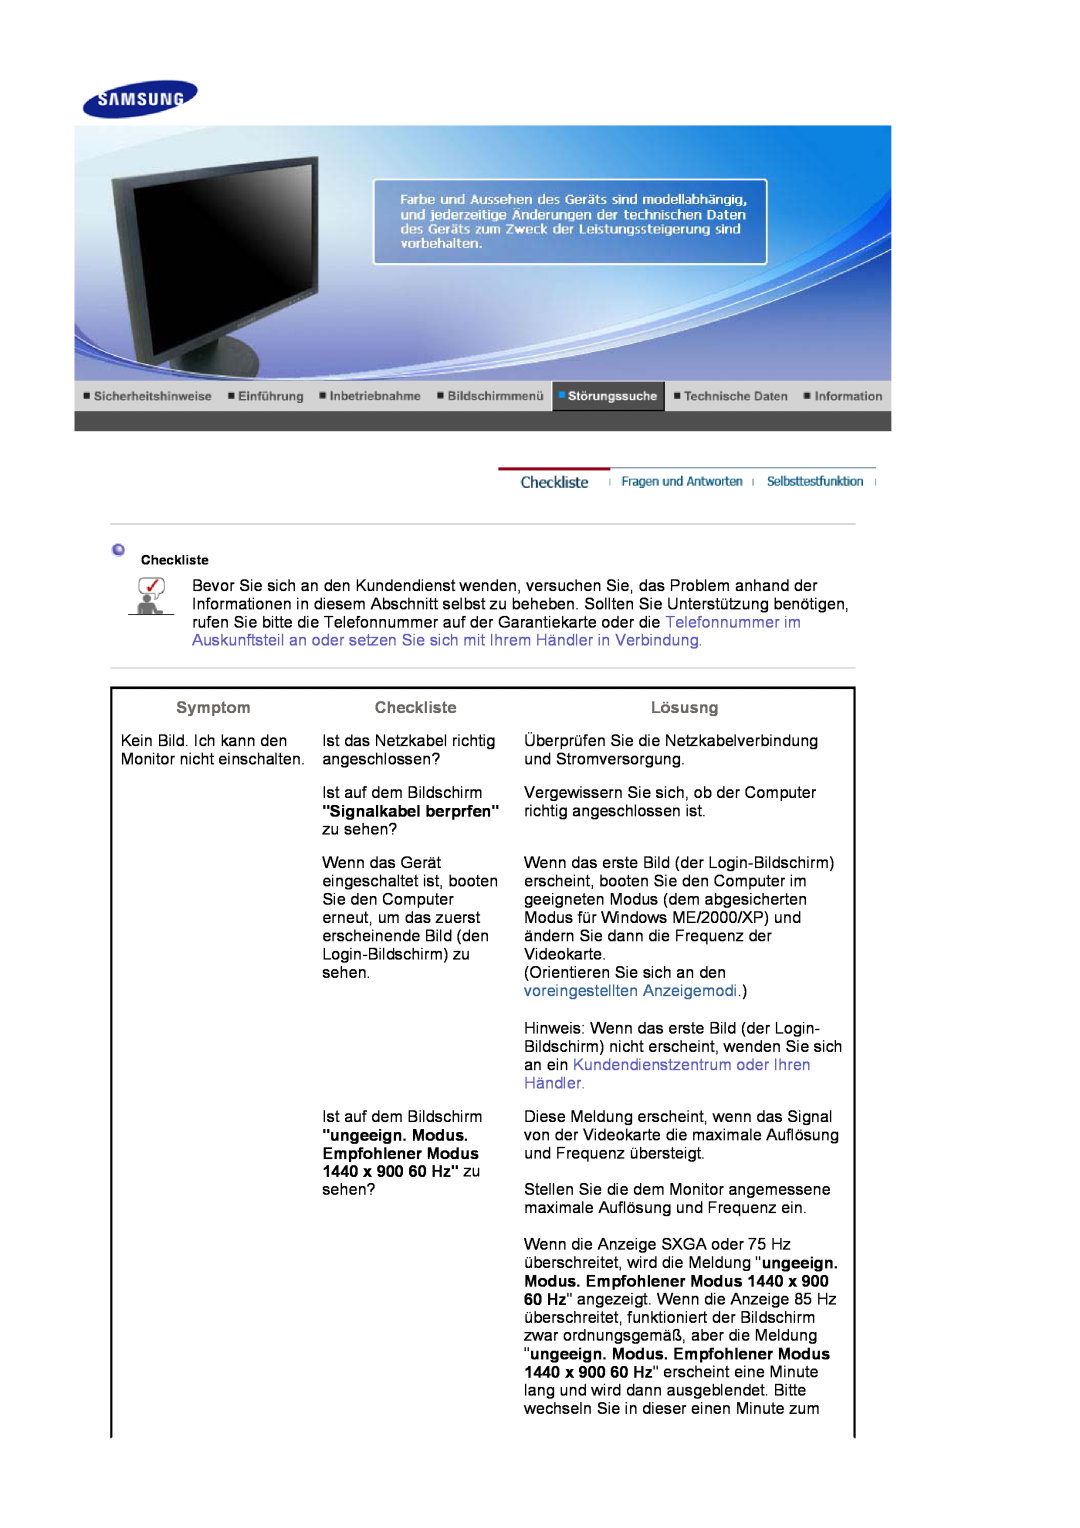 Samsung LS19HAWCSQ/EDC manual Signalkabel berprfen, ungeeign. Modus, Empfohlener Modus, 1440 x 900 60 Hz zu, Händler 